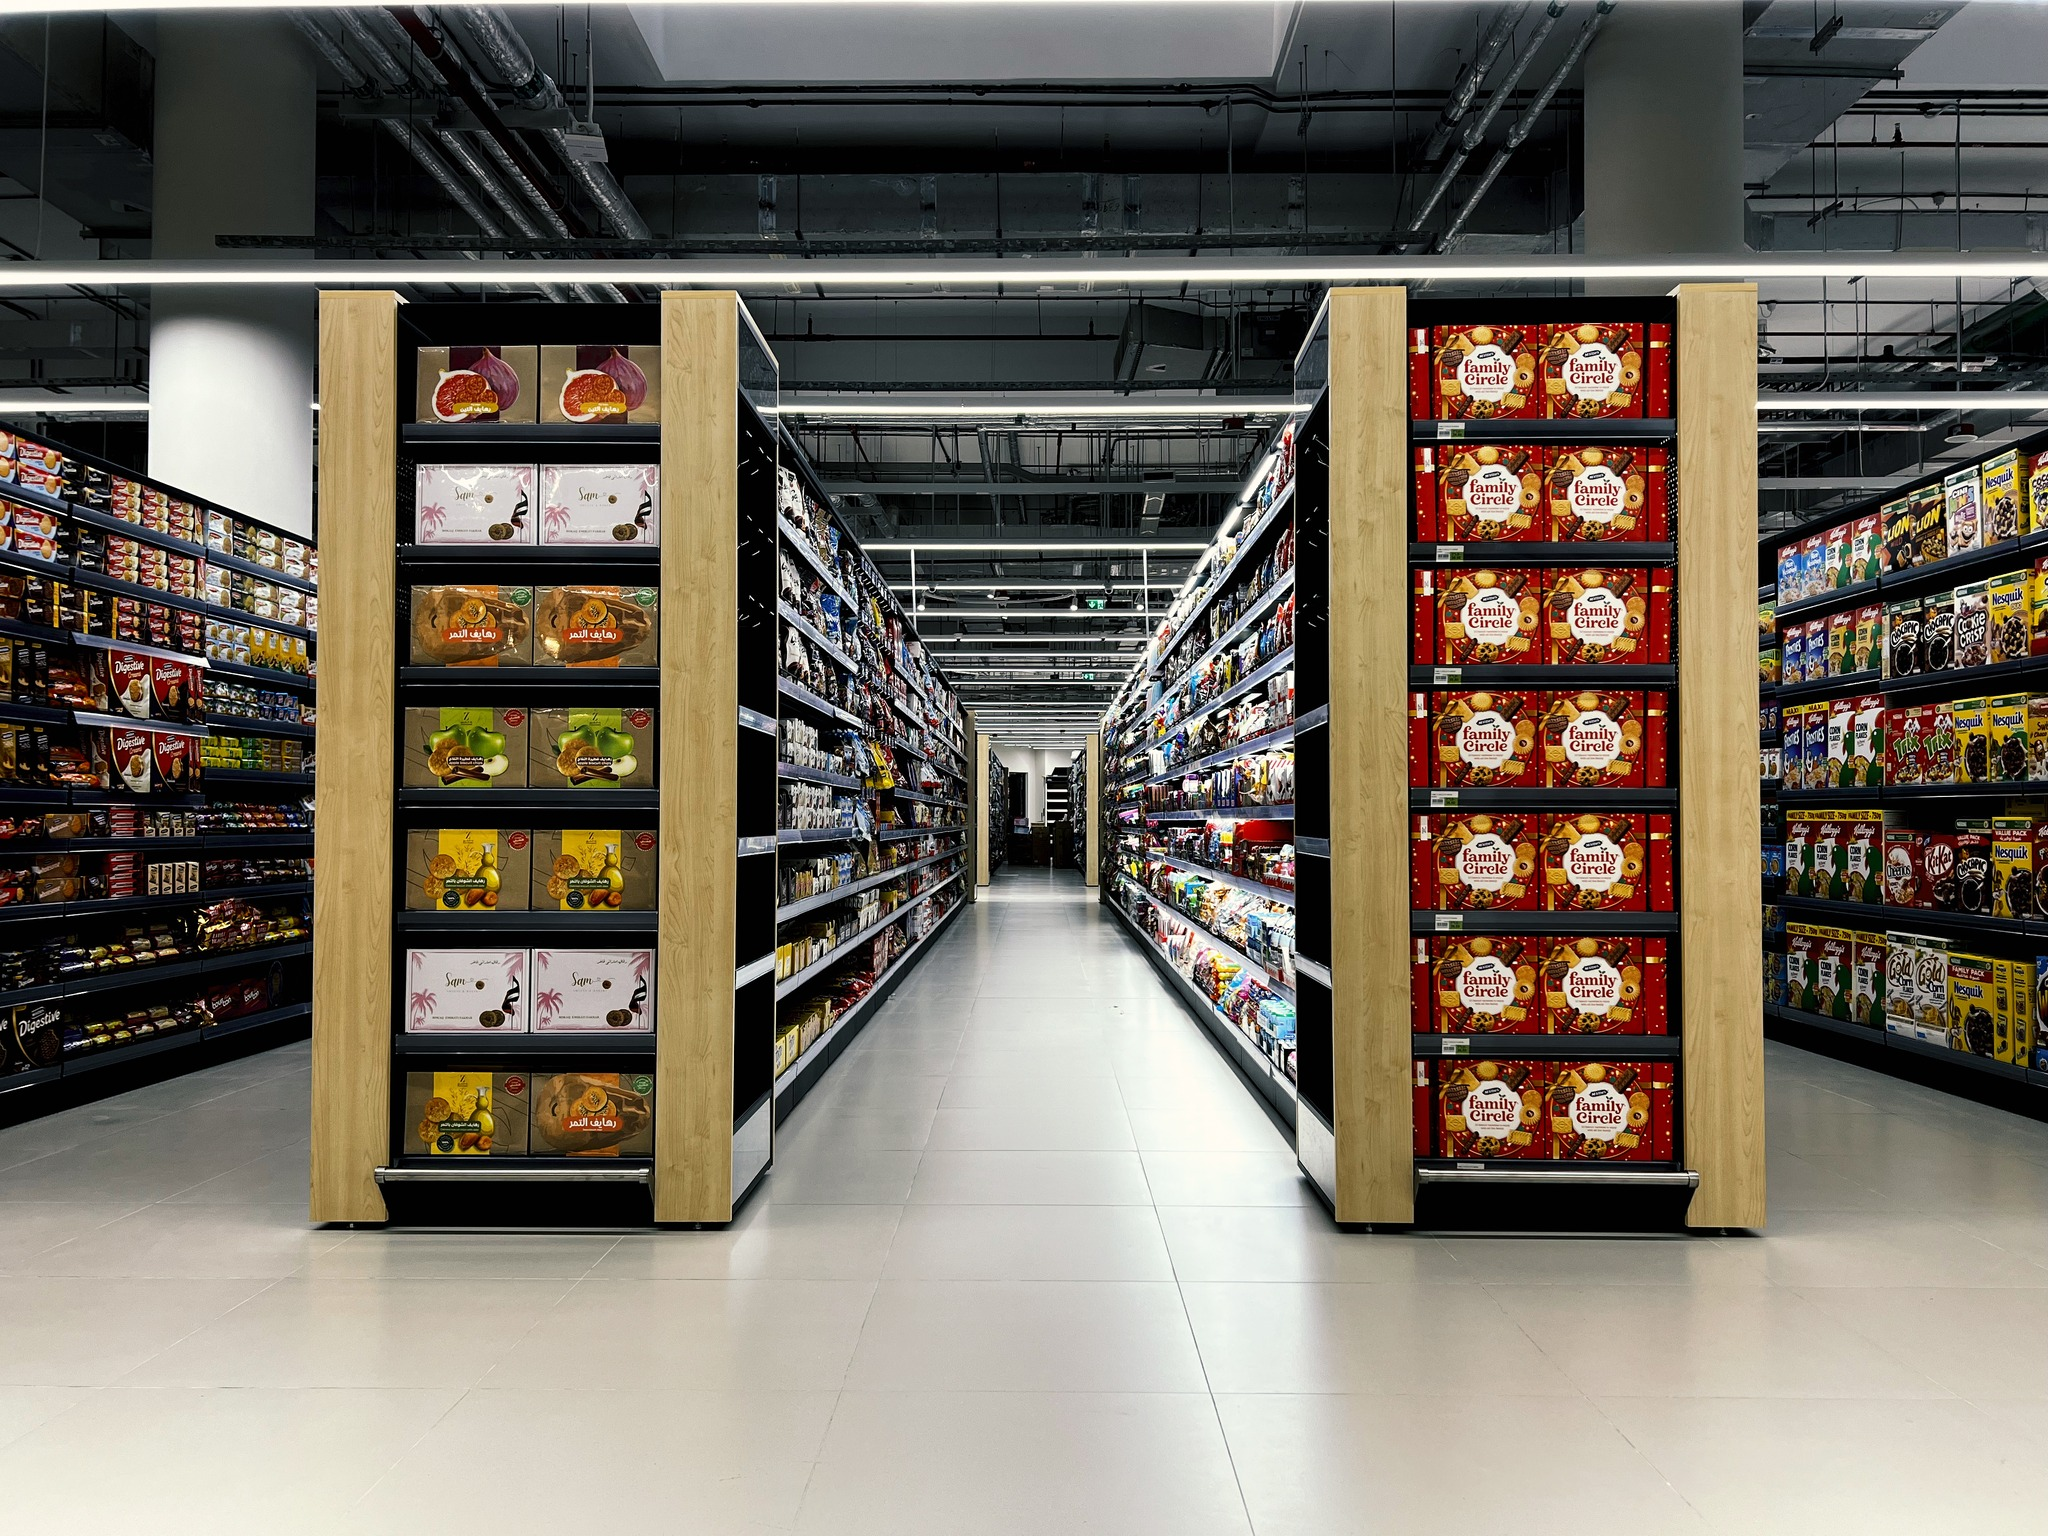 Найбільша мережа супермаркетів Дубаю закупила стелажі з Луцька (фото)